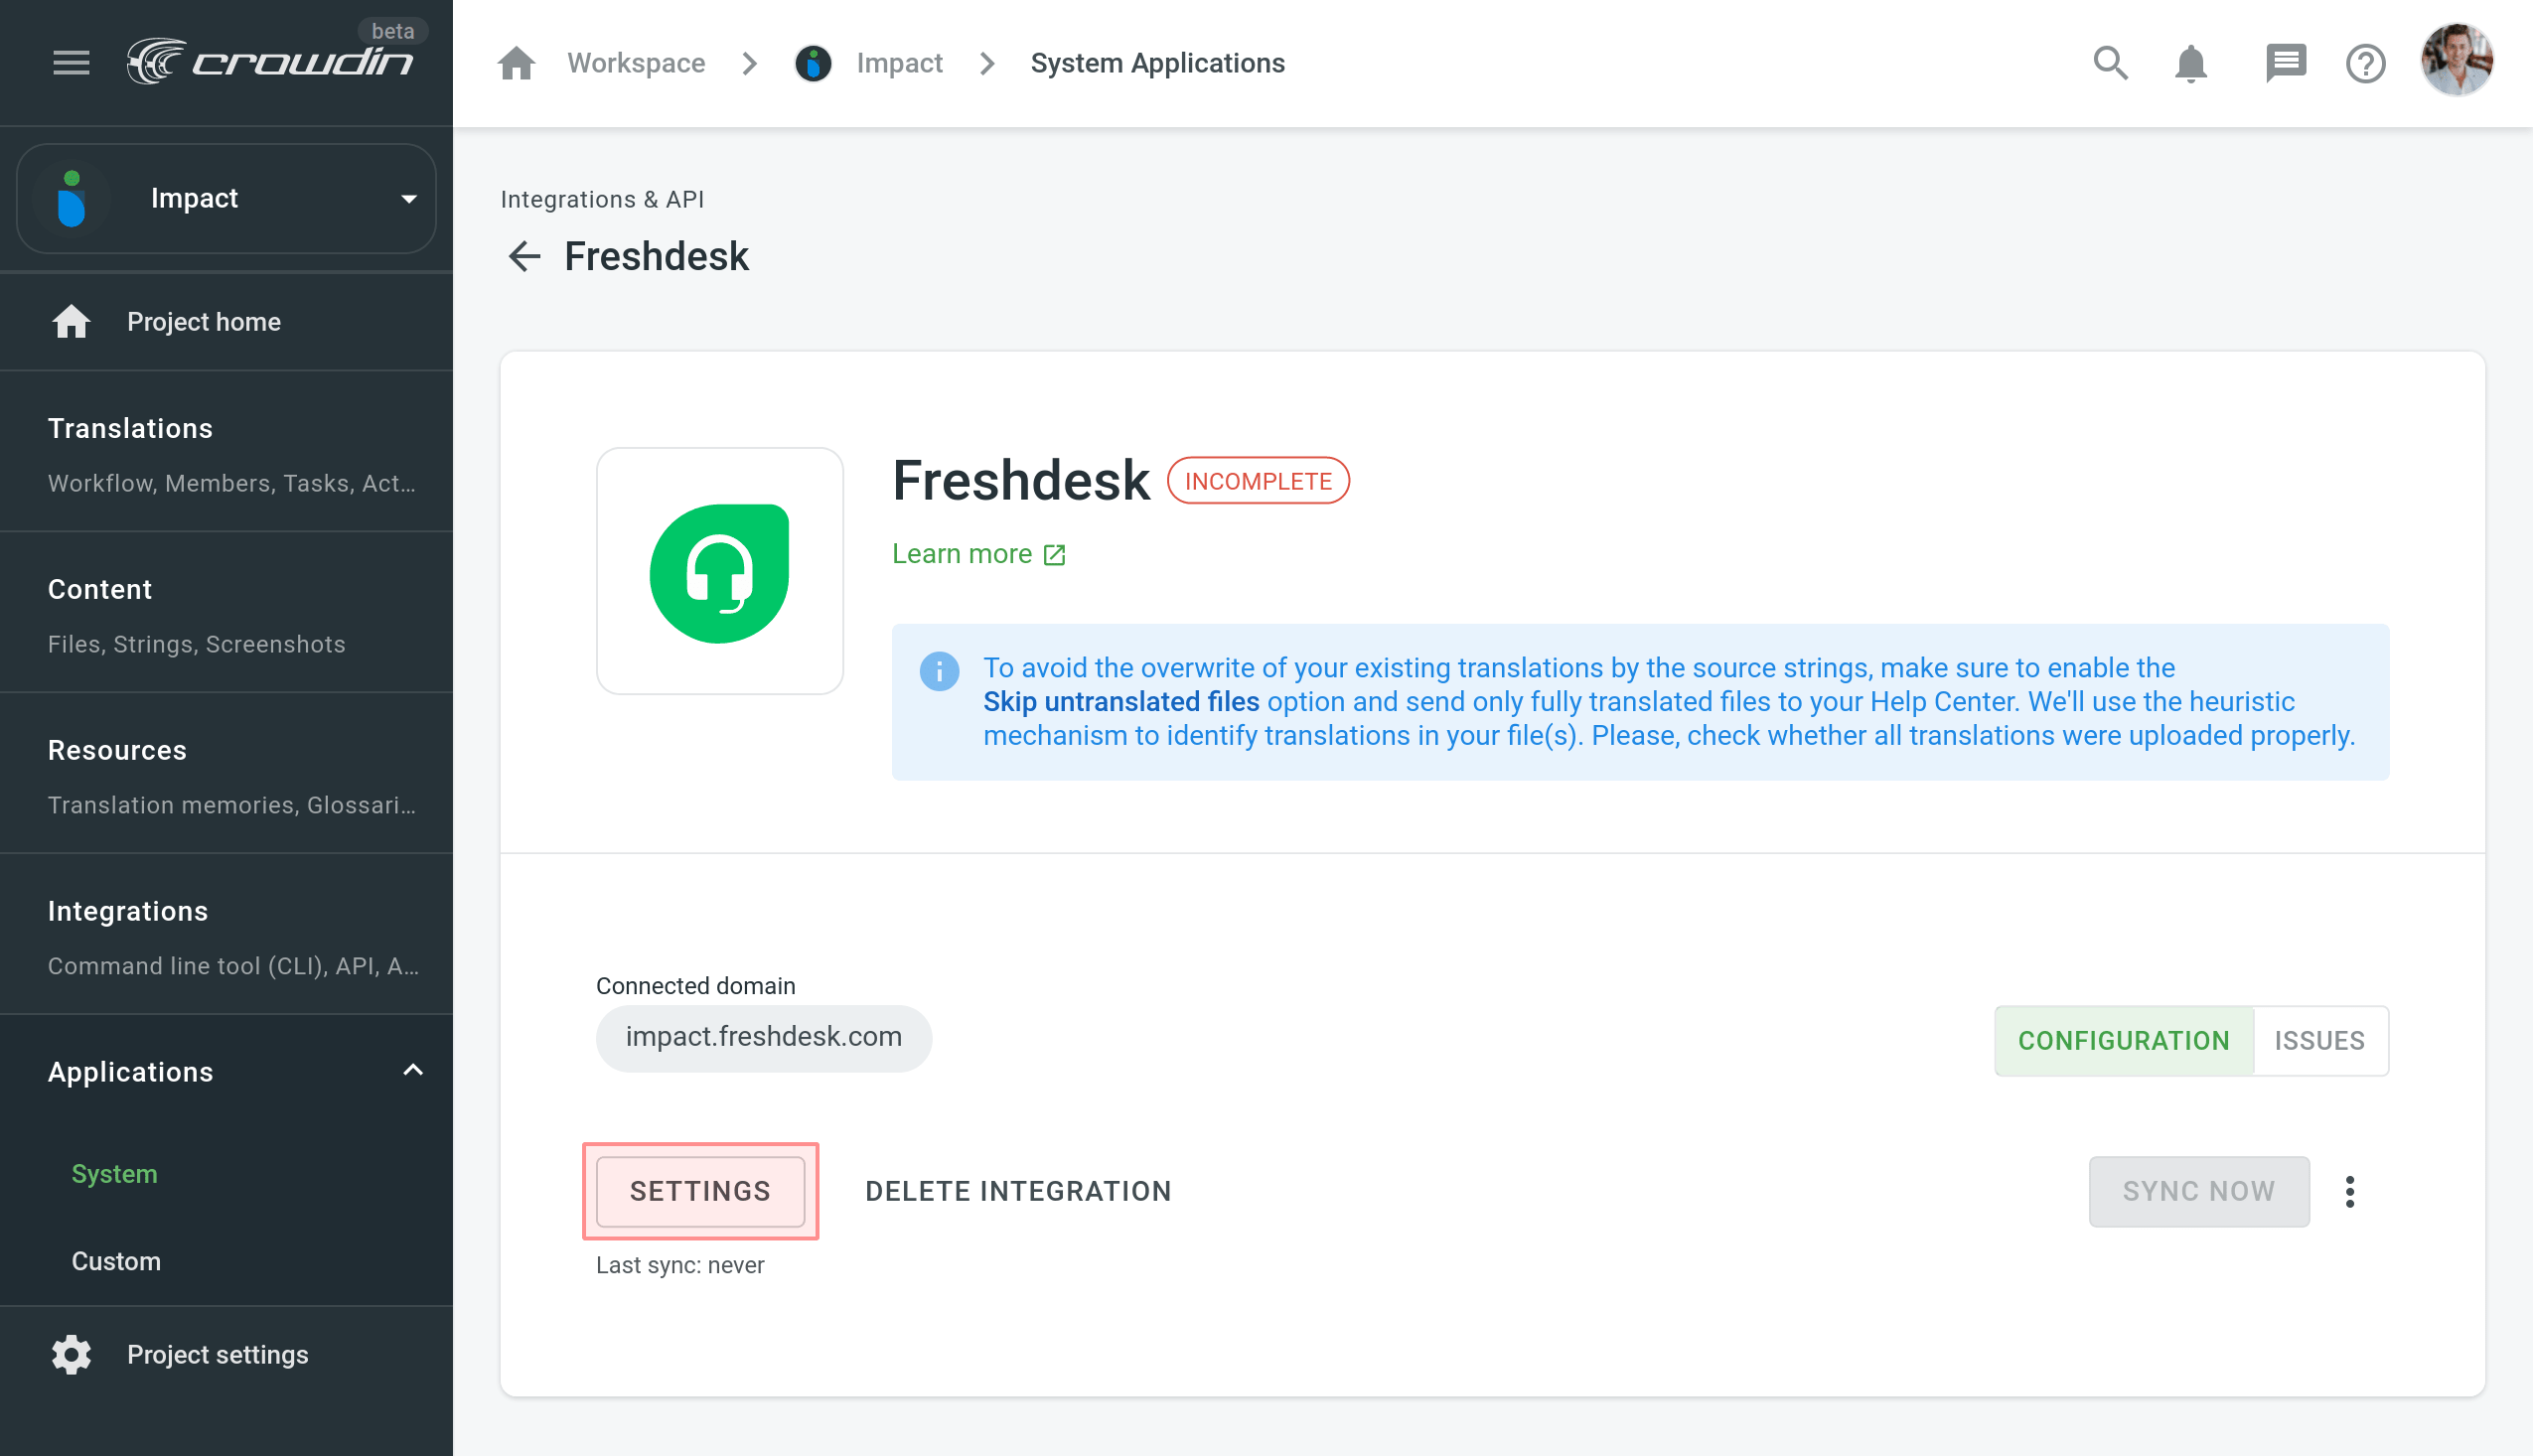 Freshdesk Integration Settings